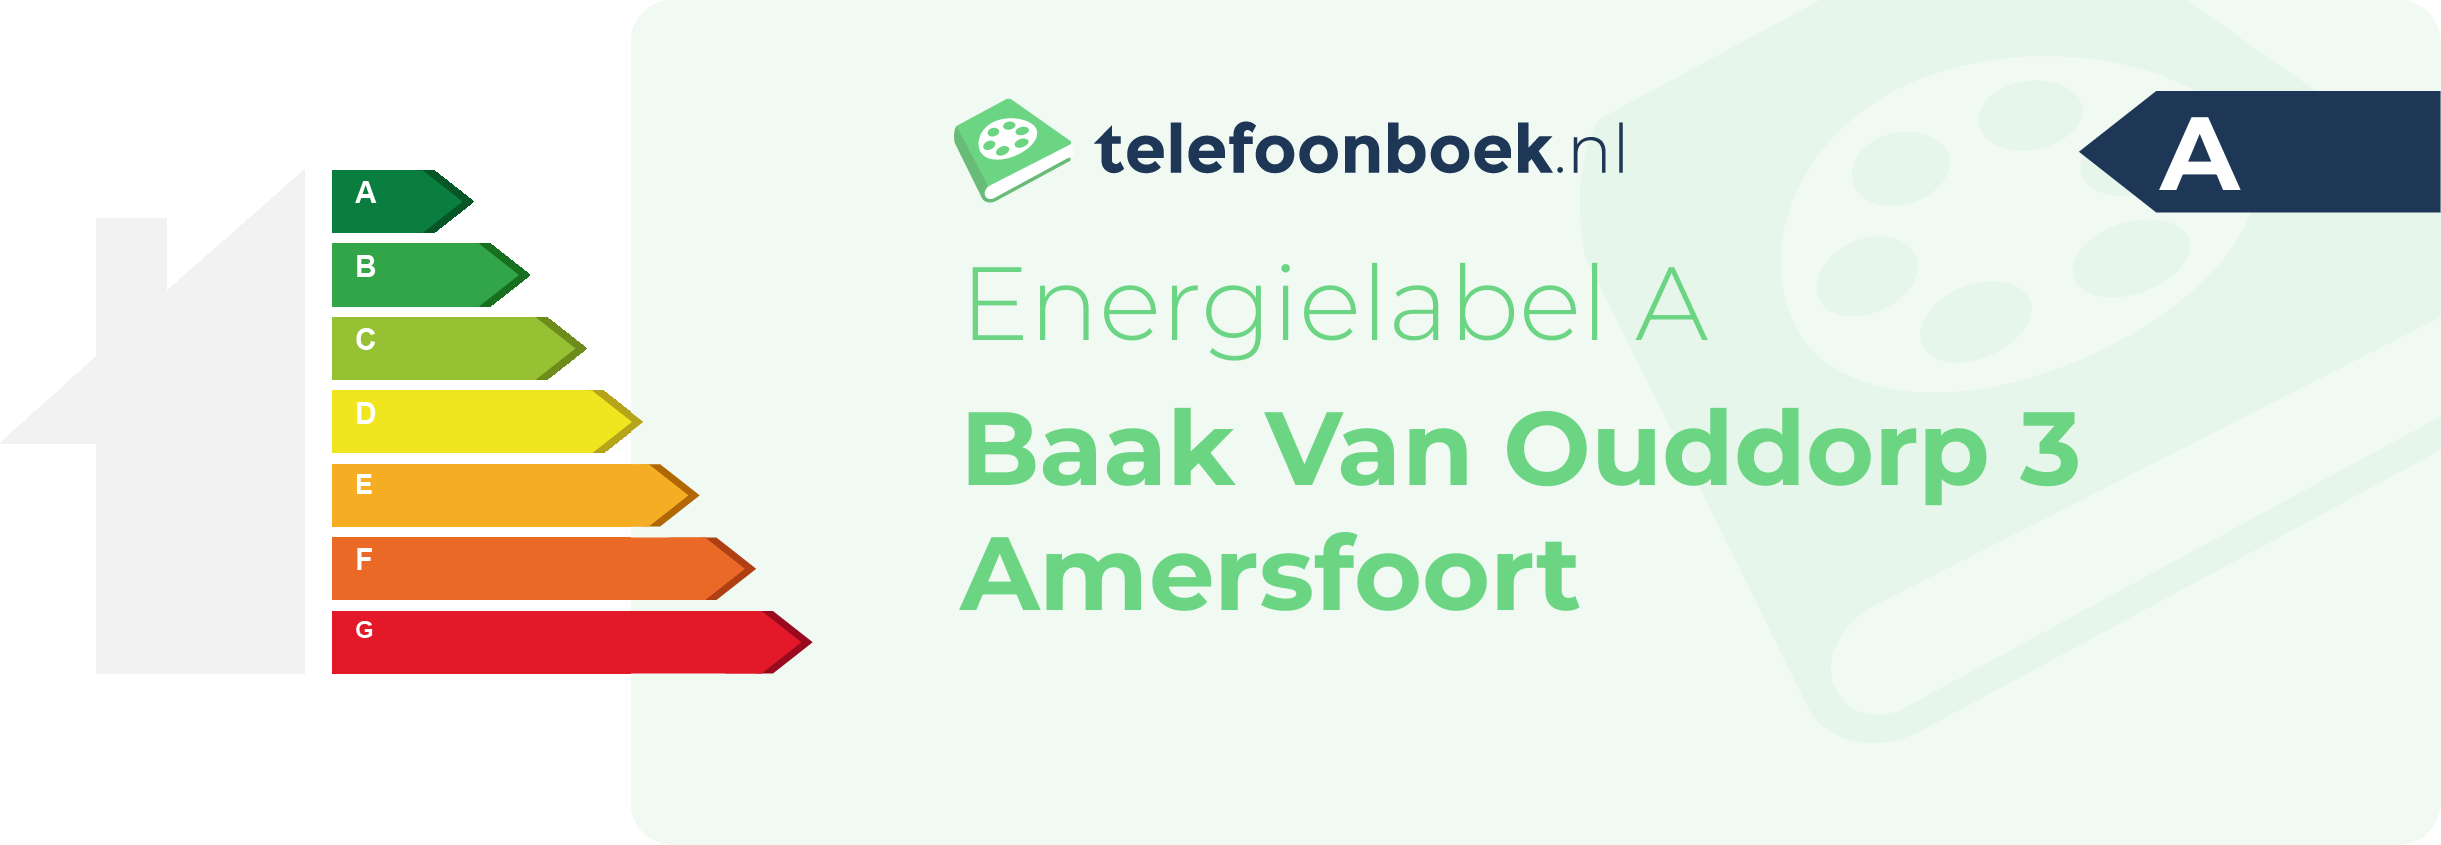 Energielabel Baak Van Ouddorp 3 Amersfoort